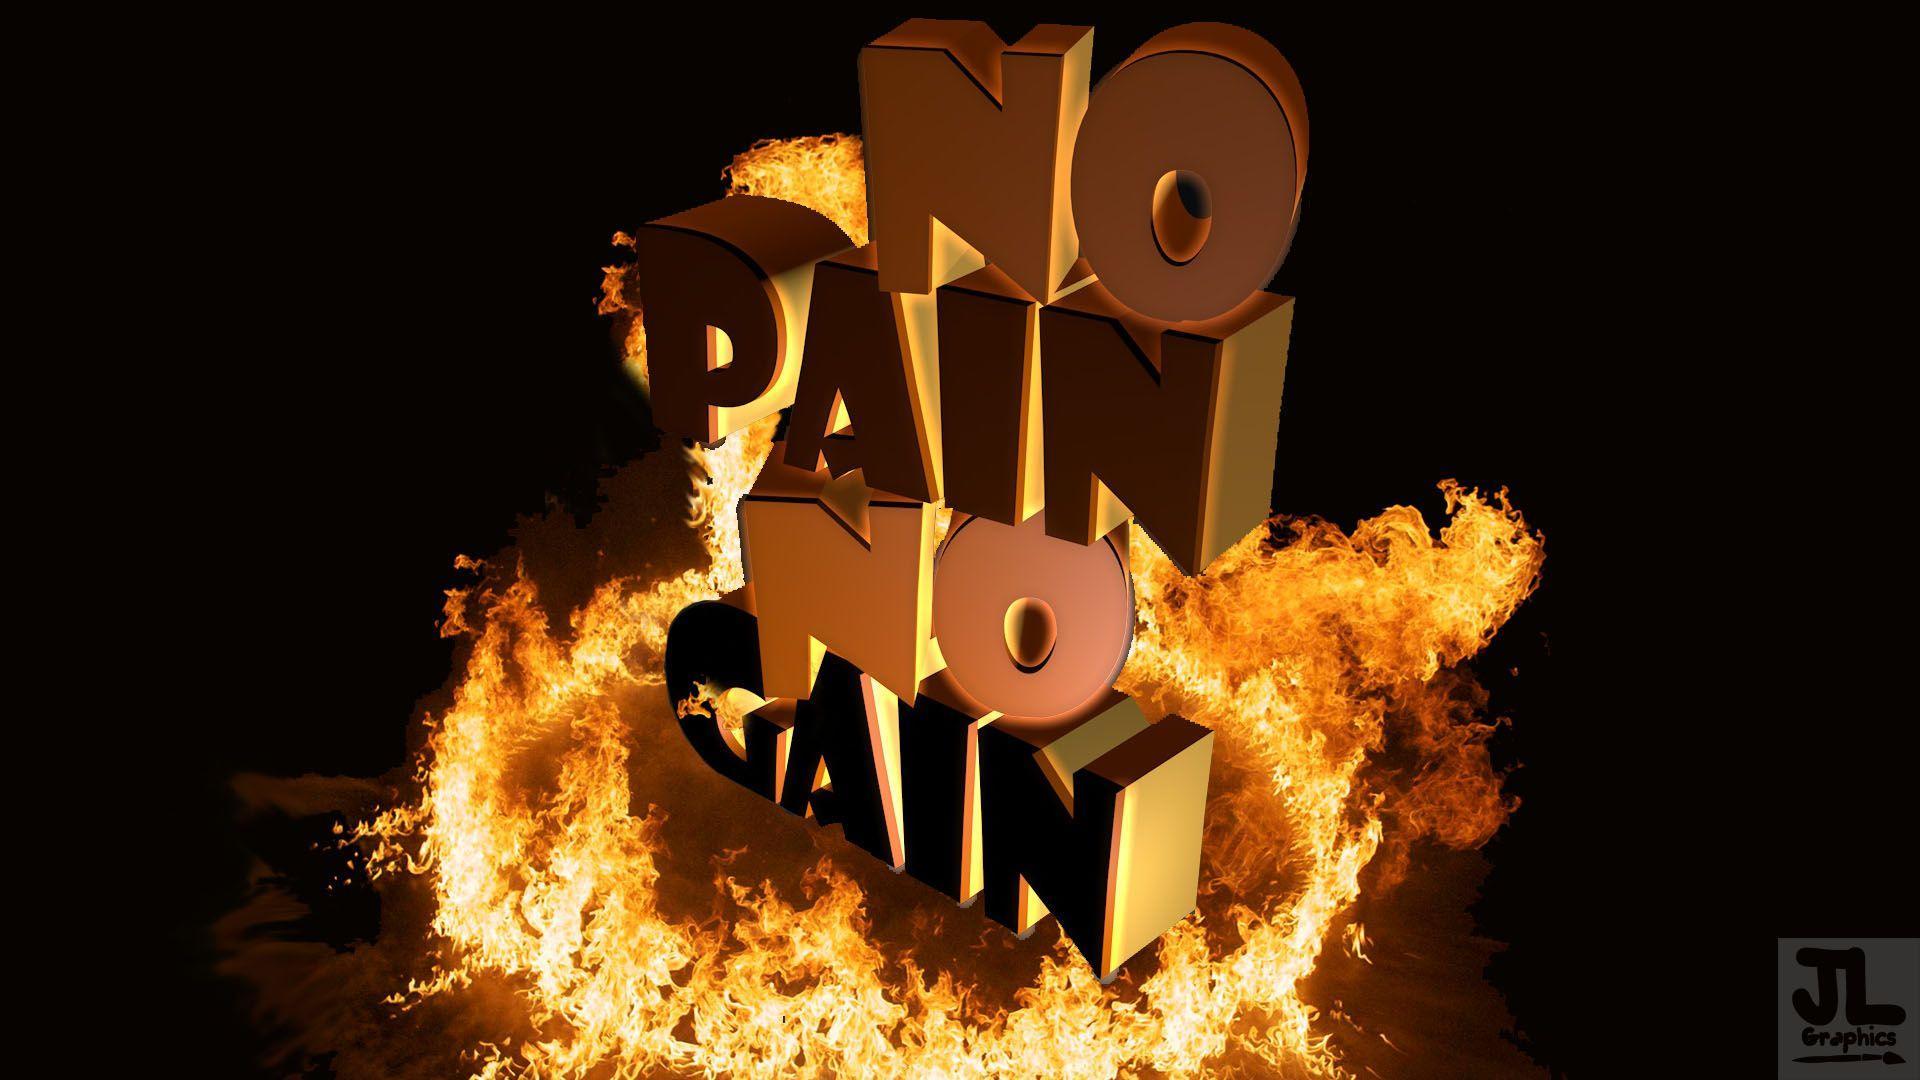 No Pain, No Gain wallpapers by Kubula333